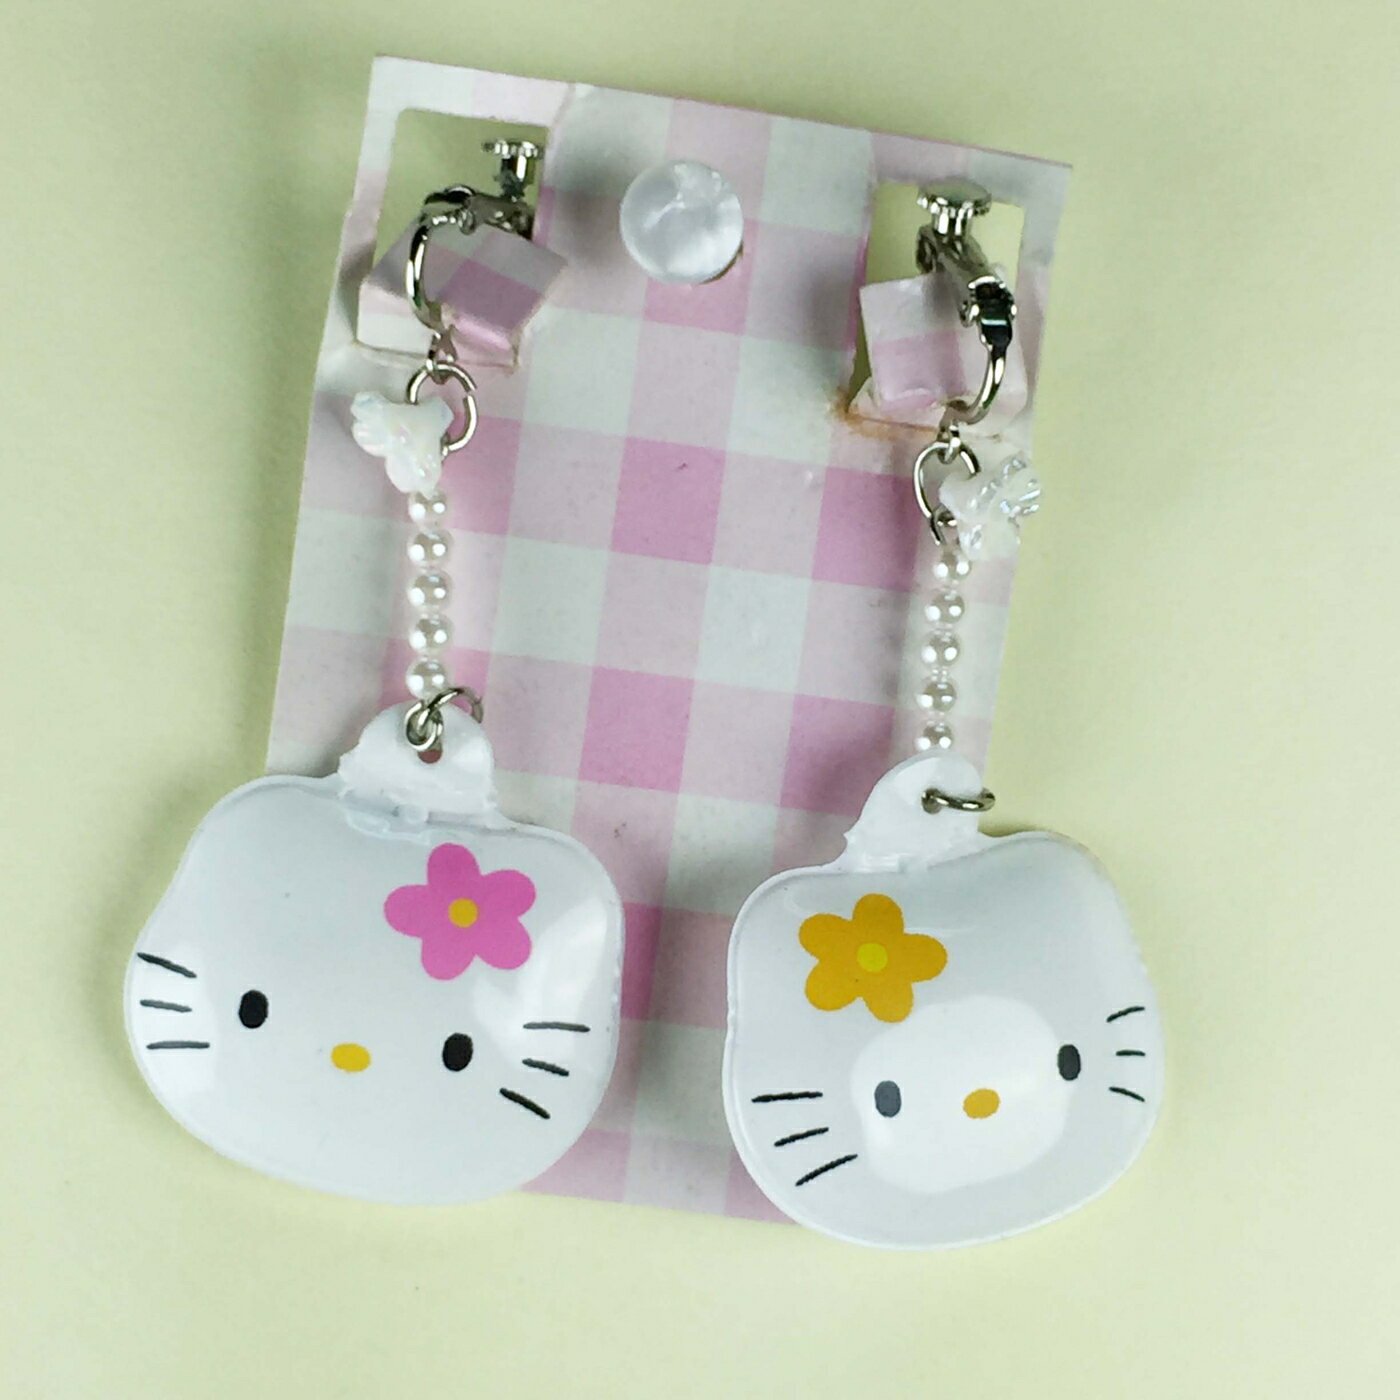 【震撼精品百貨】Hello Kitty 凱蒂貓 充氣耳環-粉橘頭造型 震撼日式精品百貨